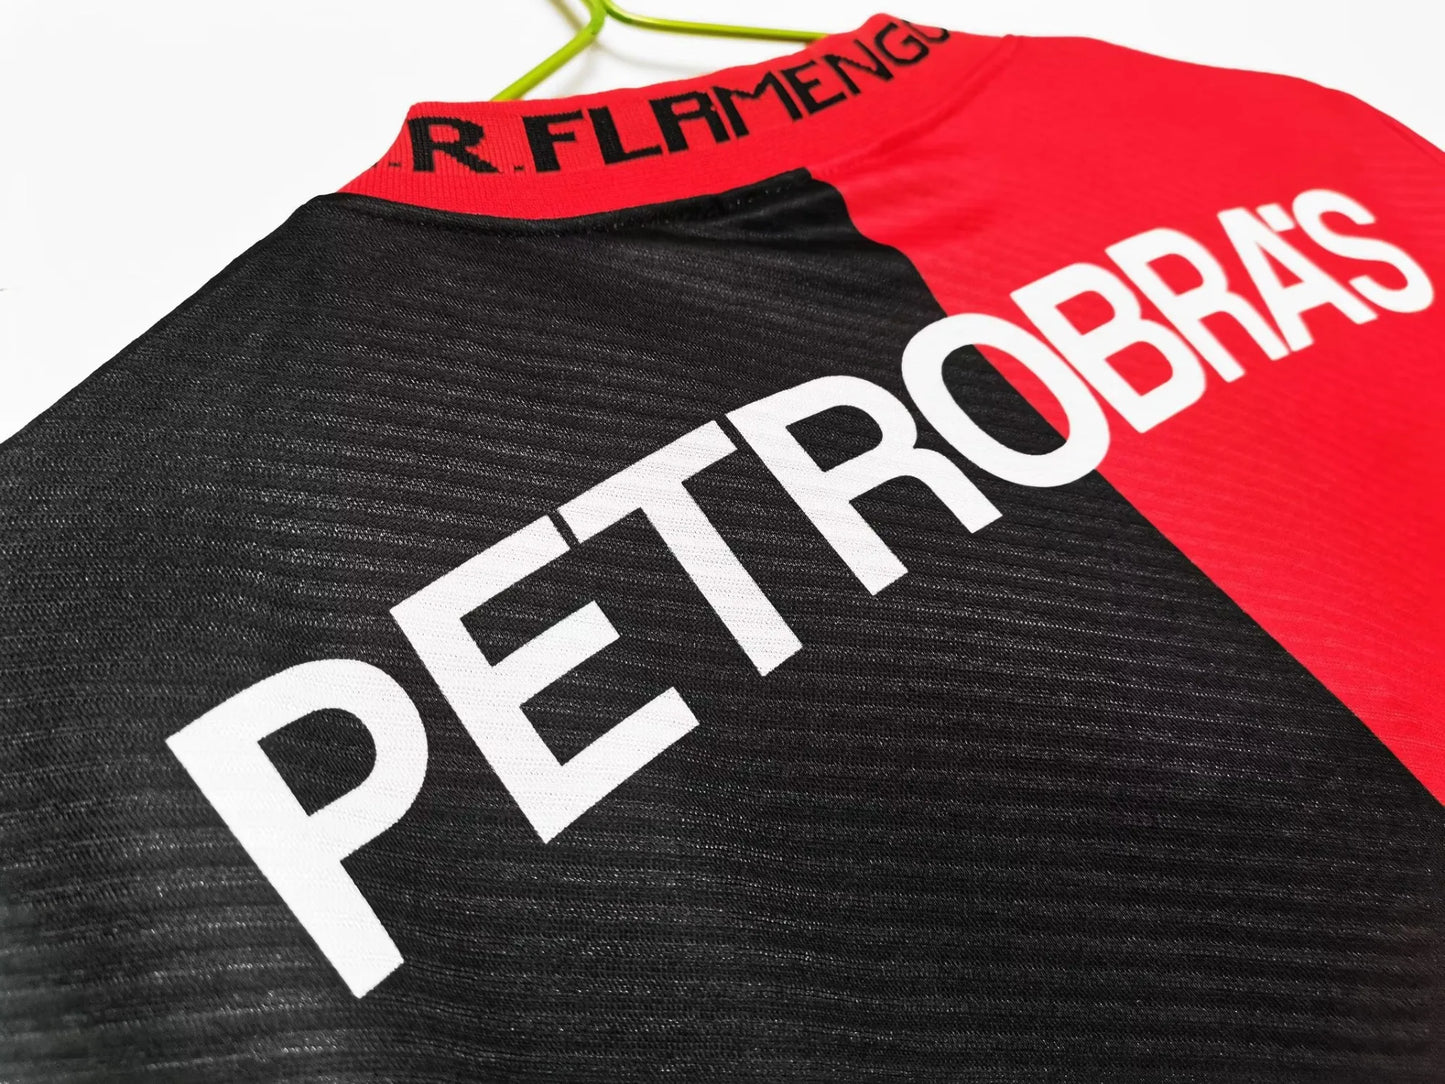 Flamengo 95-96 Anniversary Shirt